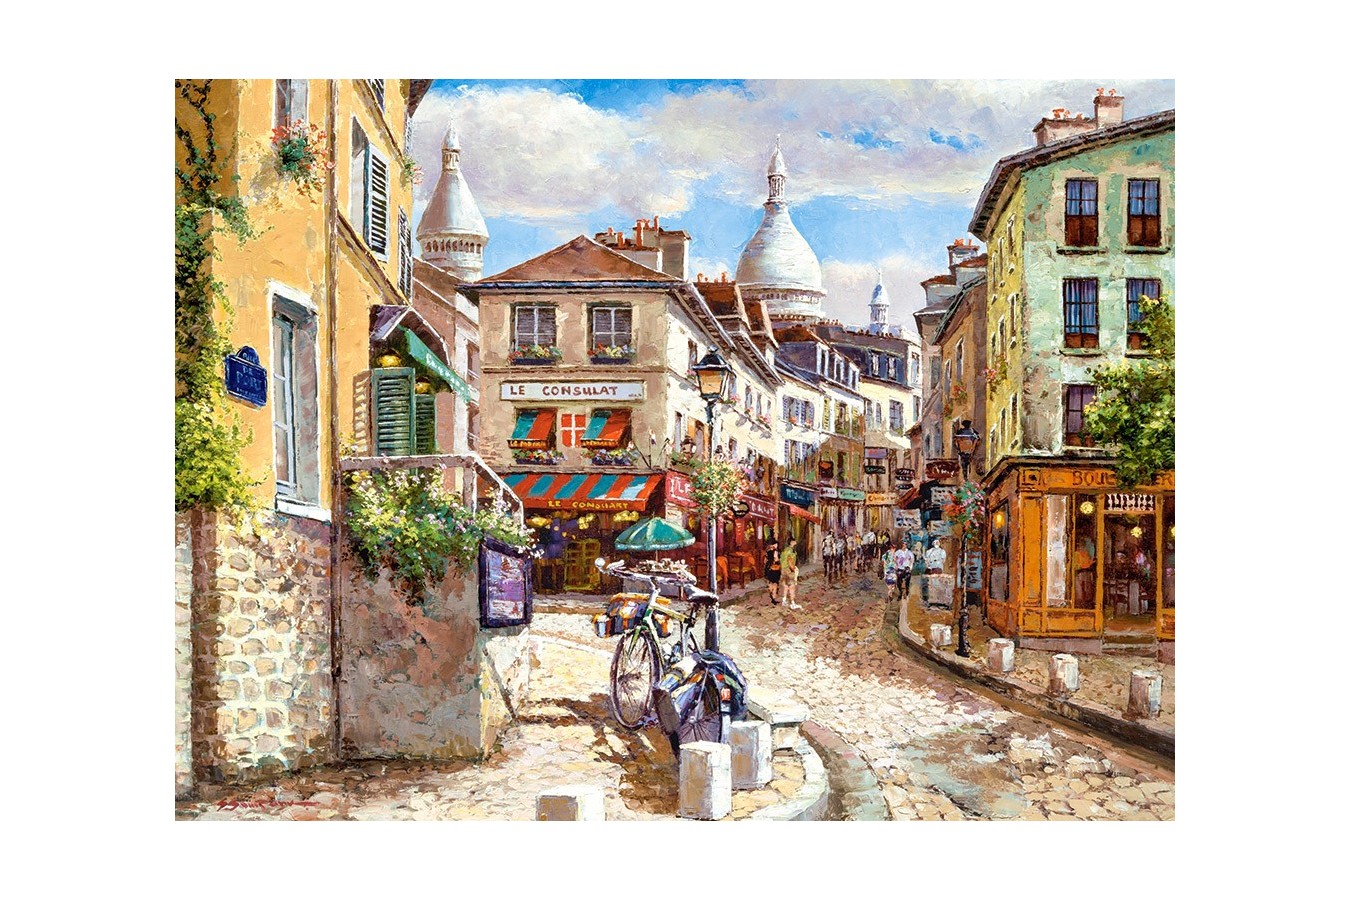 Puzzle Castorland - Mont Marc Sacre Coeur, 3000 piese (300518)